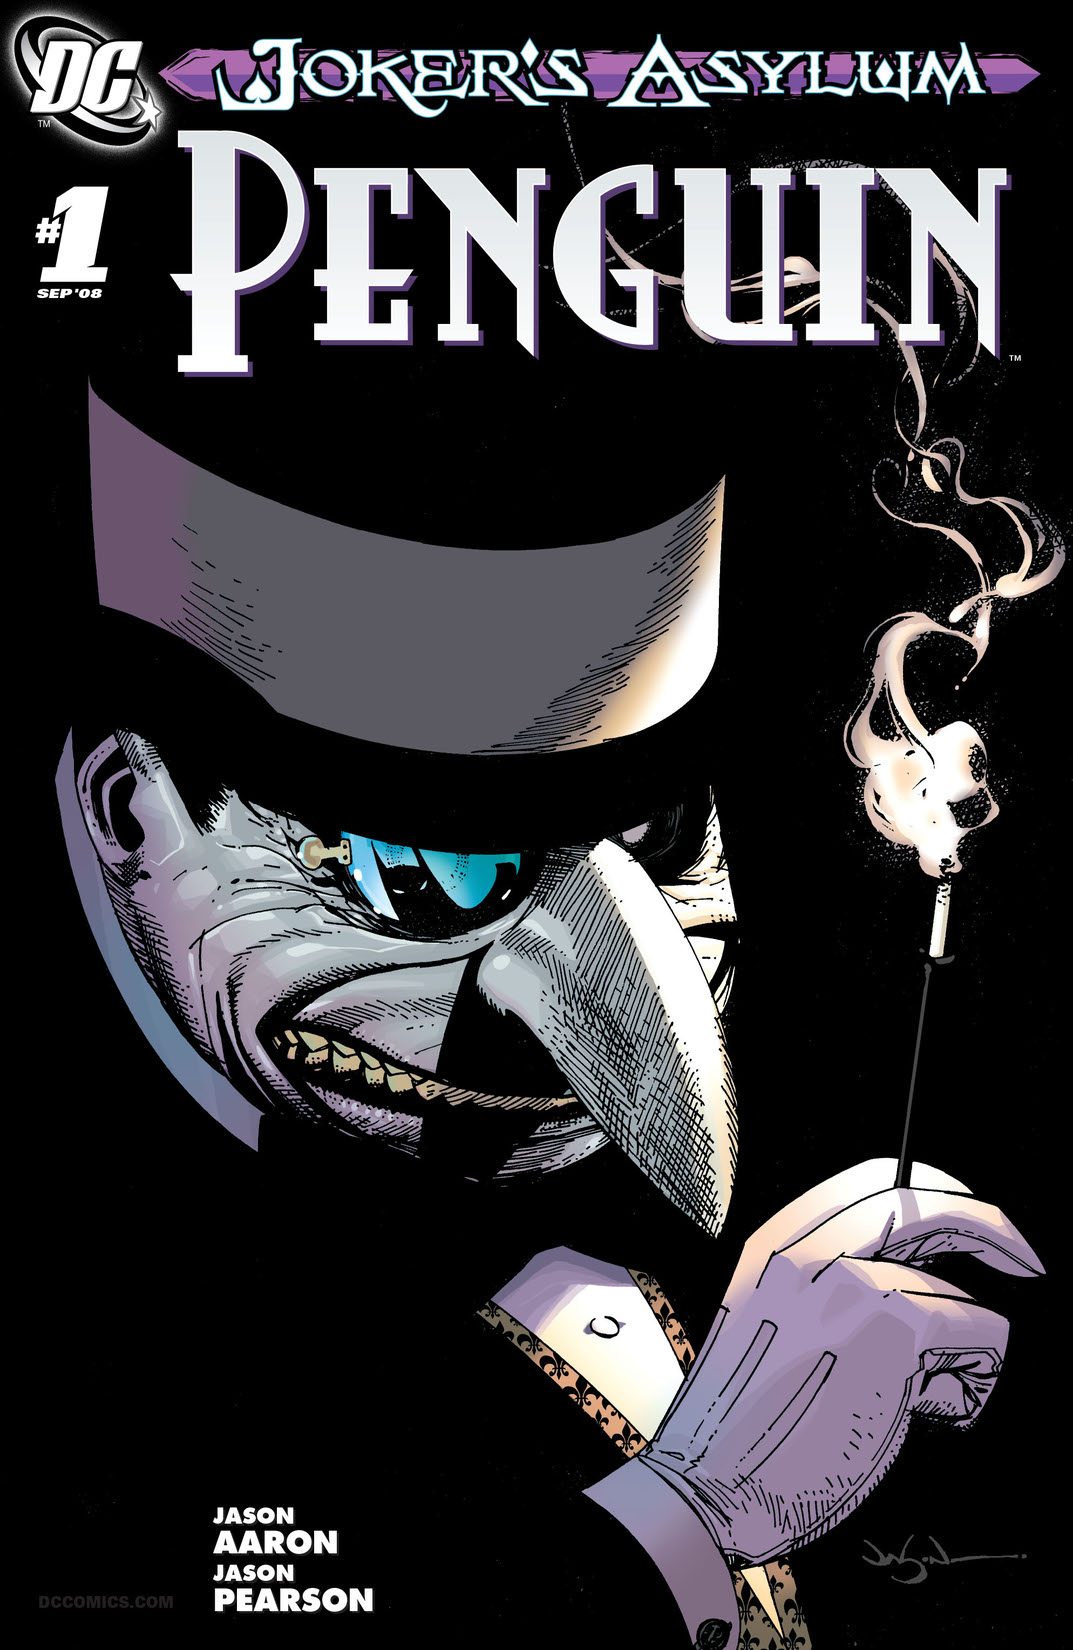 Joker's Asylum: Penguin #1 preview images